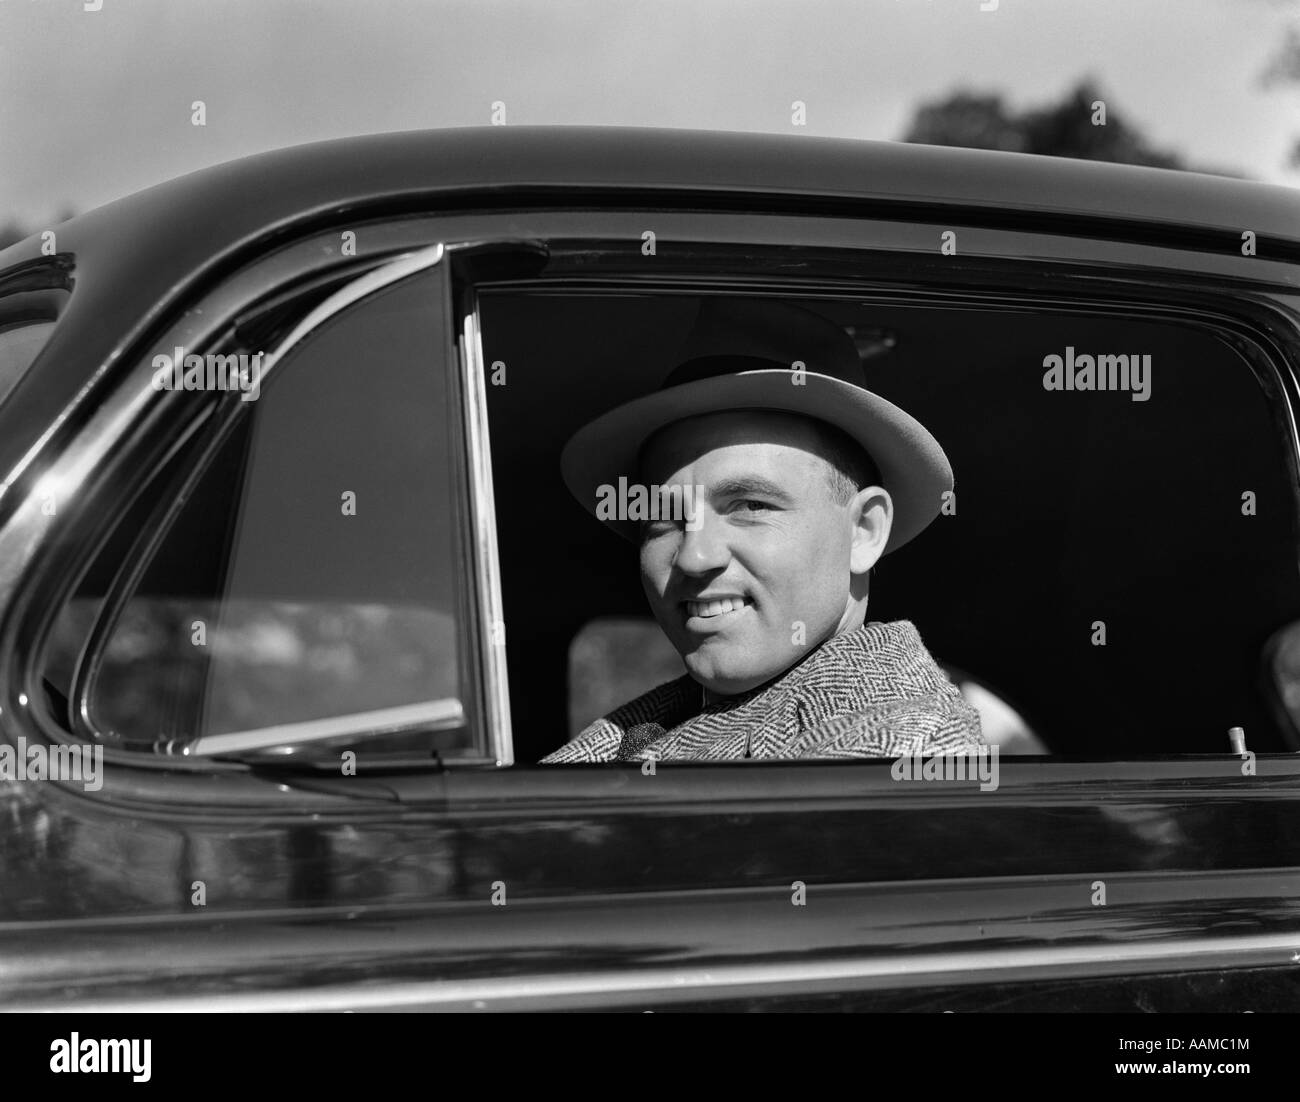 1950 Voiture de l'homme sourire sourire Banque D'Images